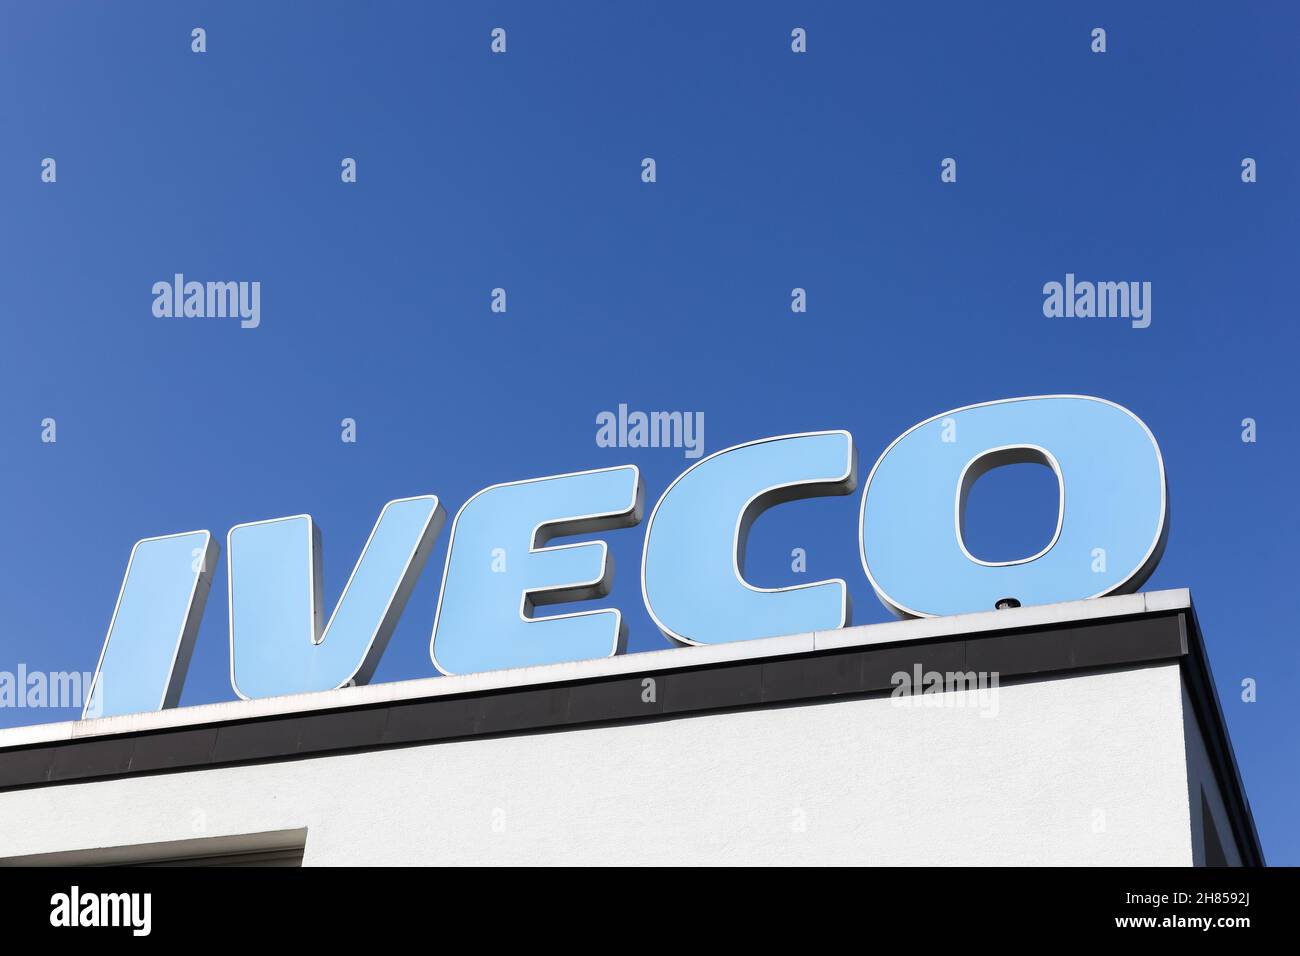 Remscheid, Germania - 2 settembre 2018: Iveco, acronimo di Industrial Vehicles Corporation, è un'azienda italiana produttrice di veicoli industriali Foto Stock